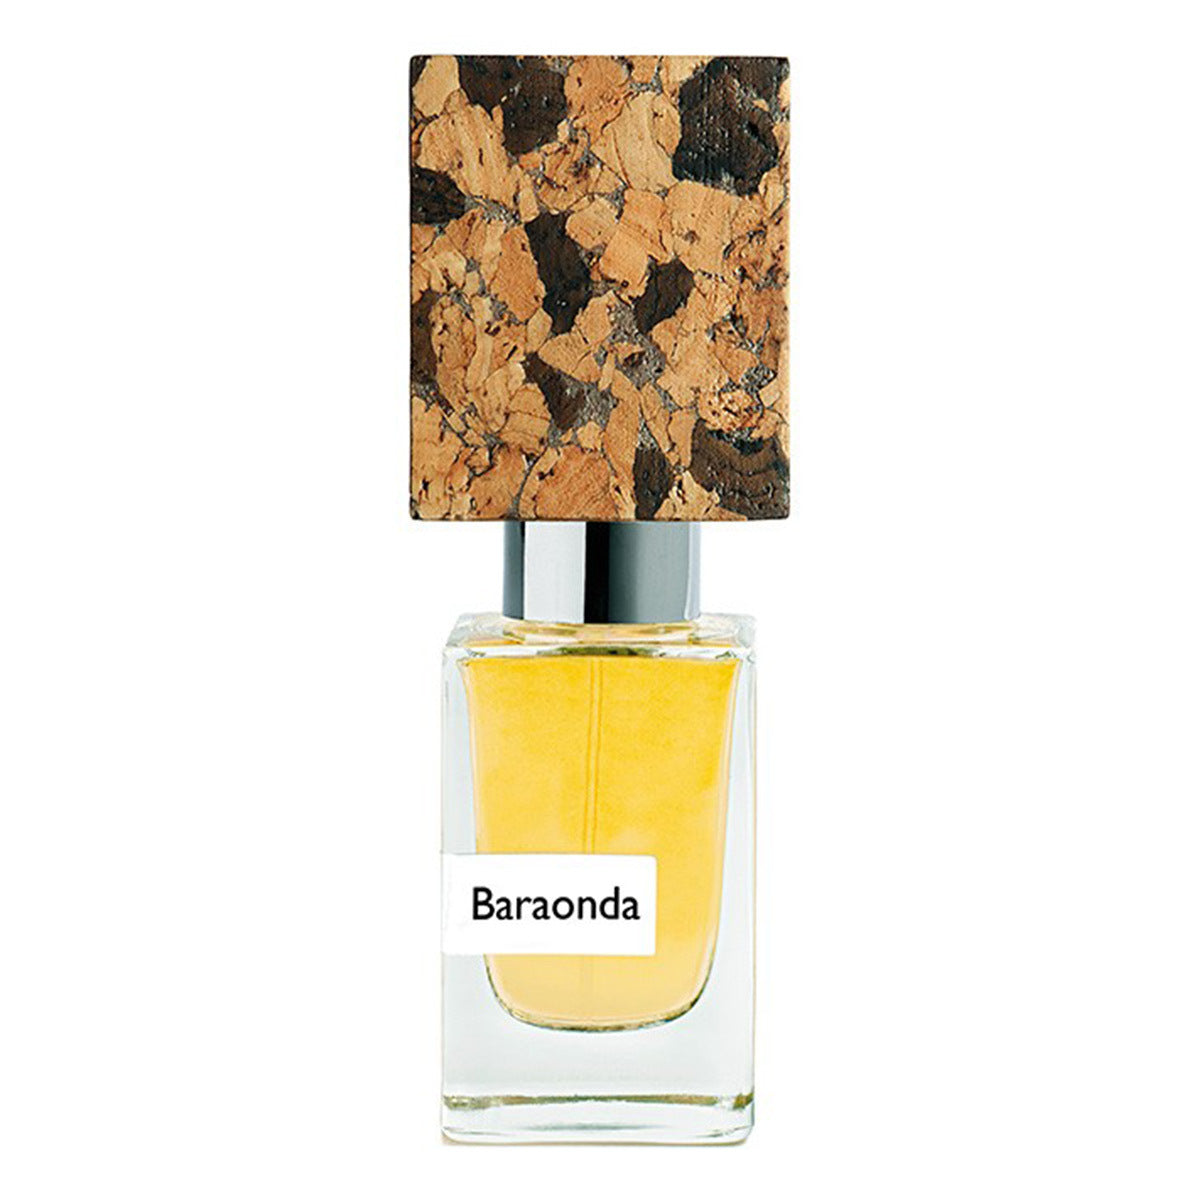 Primary image of Baraonda Extrait de Parfum